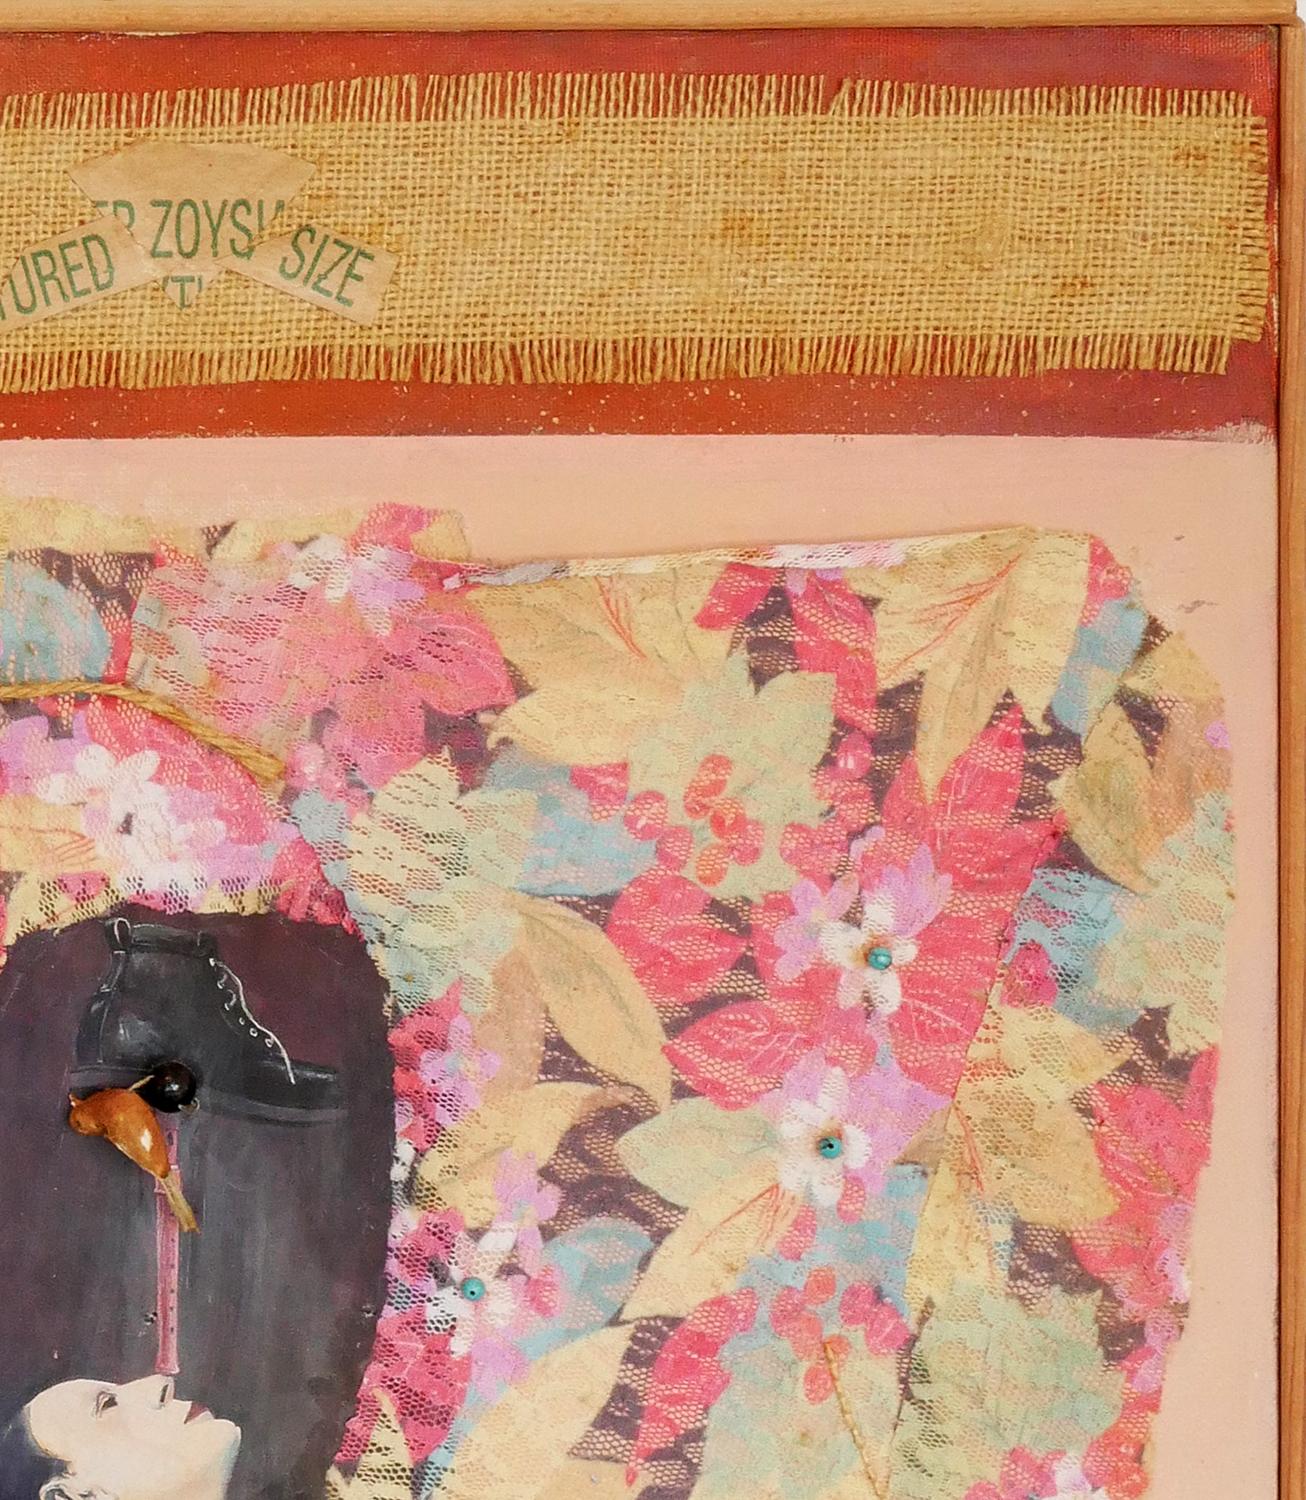 Peinture abstraite figurative rose et orange réalisée par l'artiste Margaret Nobler, de Houston, au Texas. Le tableau représente une figure féminine sur un tissu floral aux tons roses. Des bandes de toile de jute brune sont également visibles en